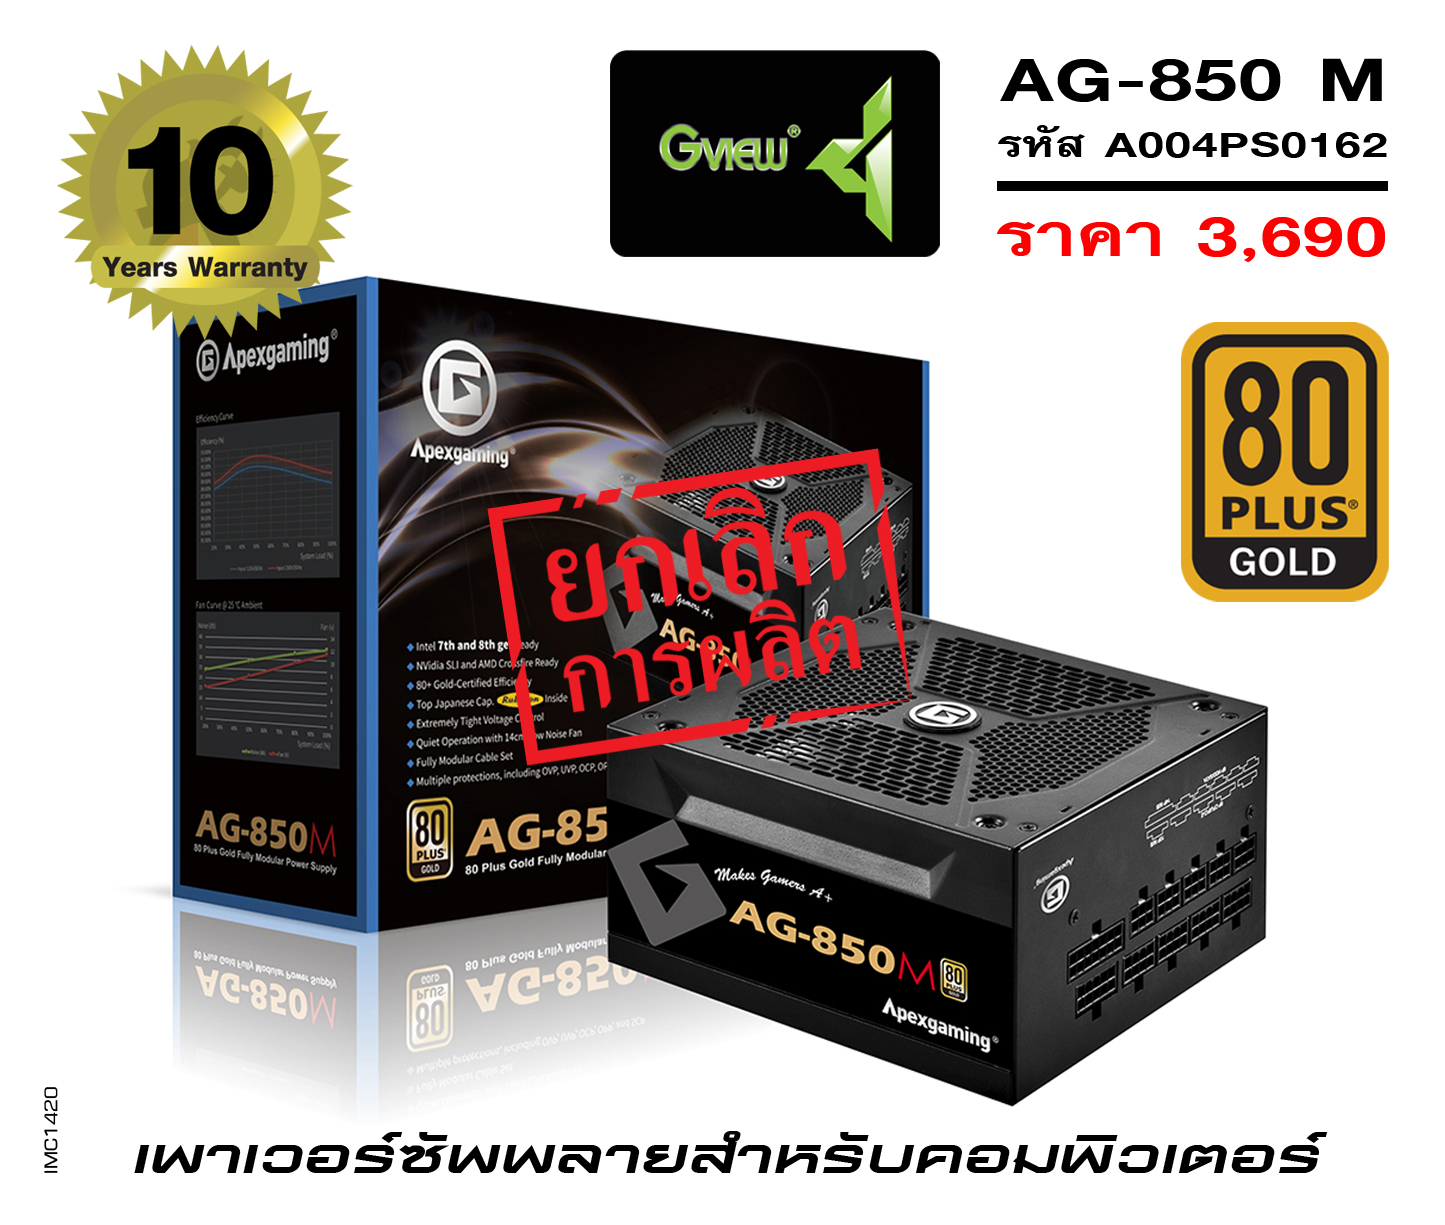 รุ่น AG-850 M (รหัส A004PS0162)